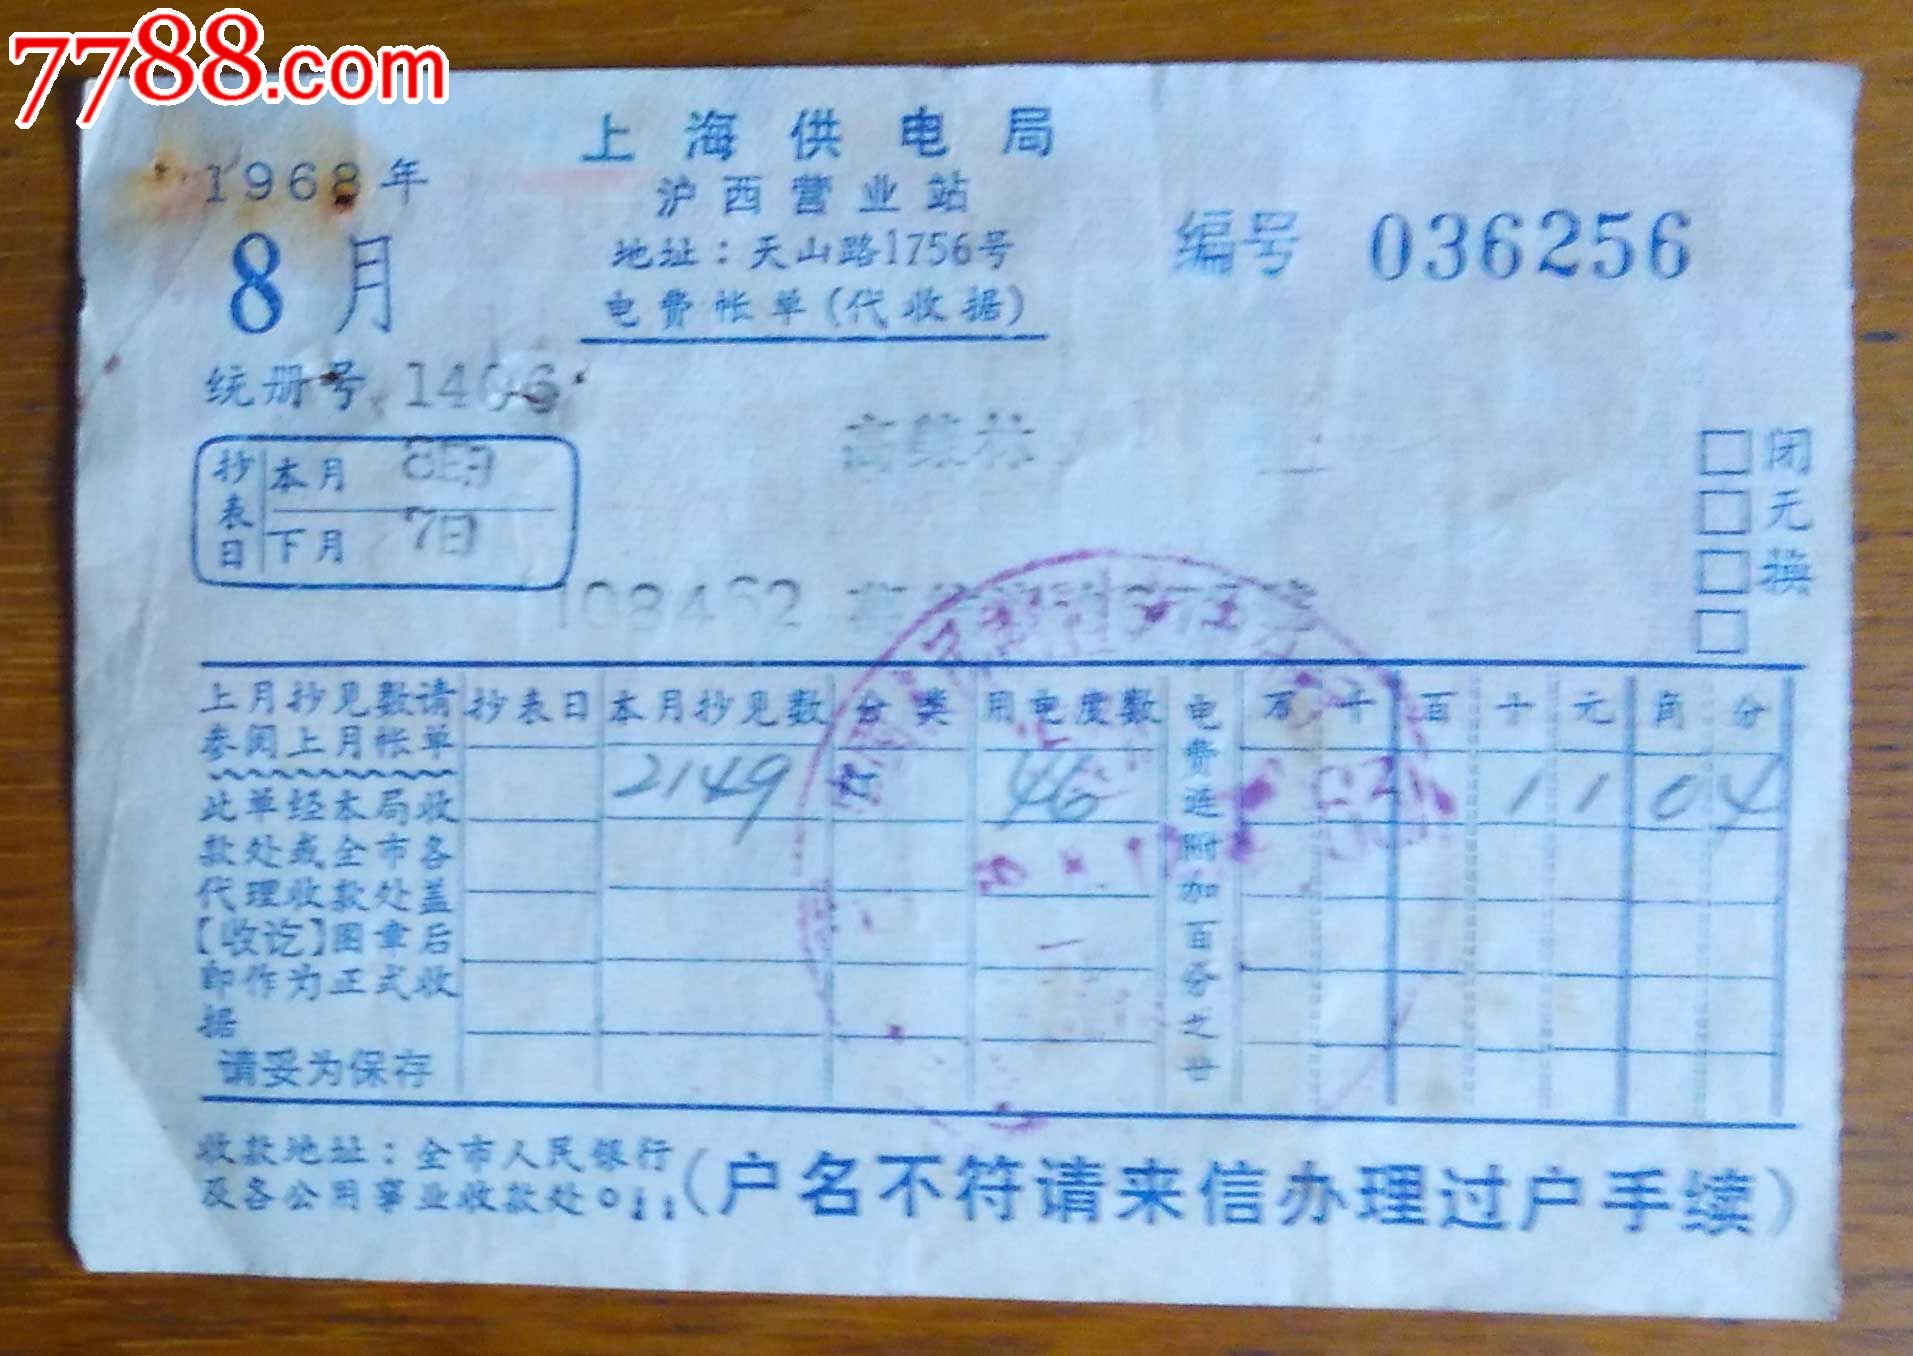 上海供电局沪西营业所电费账单-1968年8月(带语录)